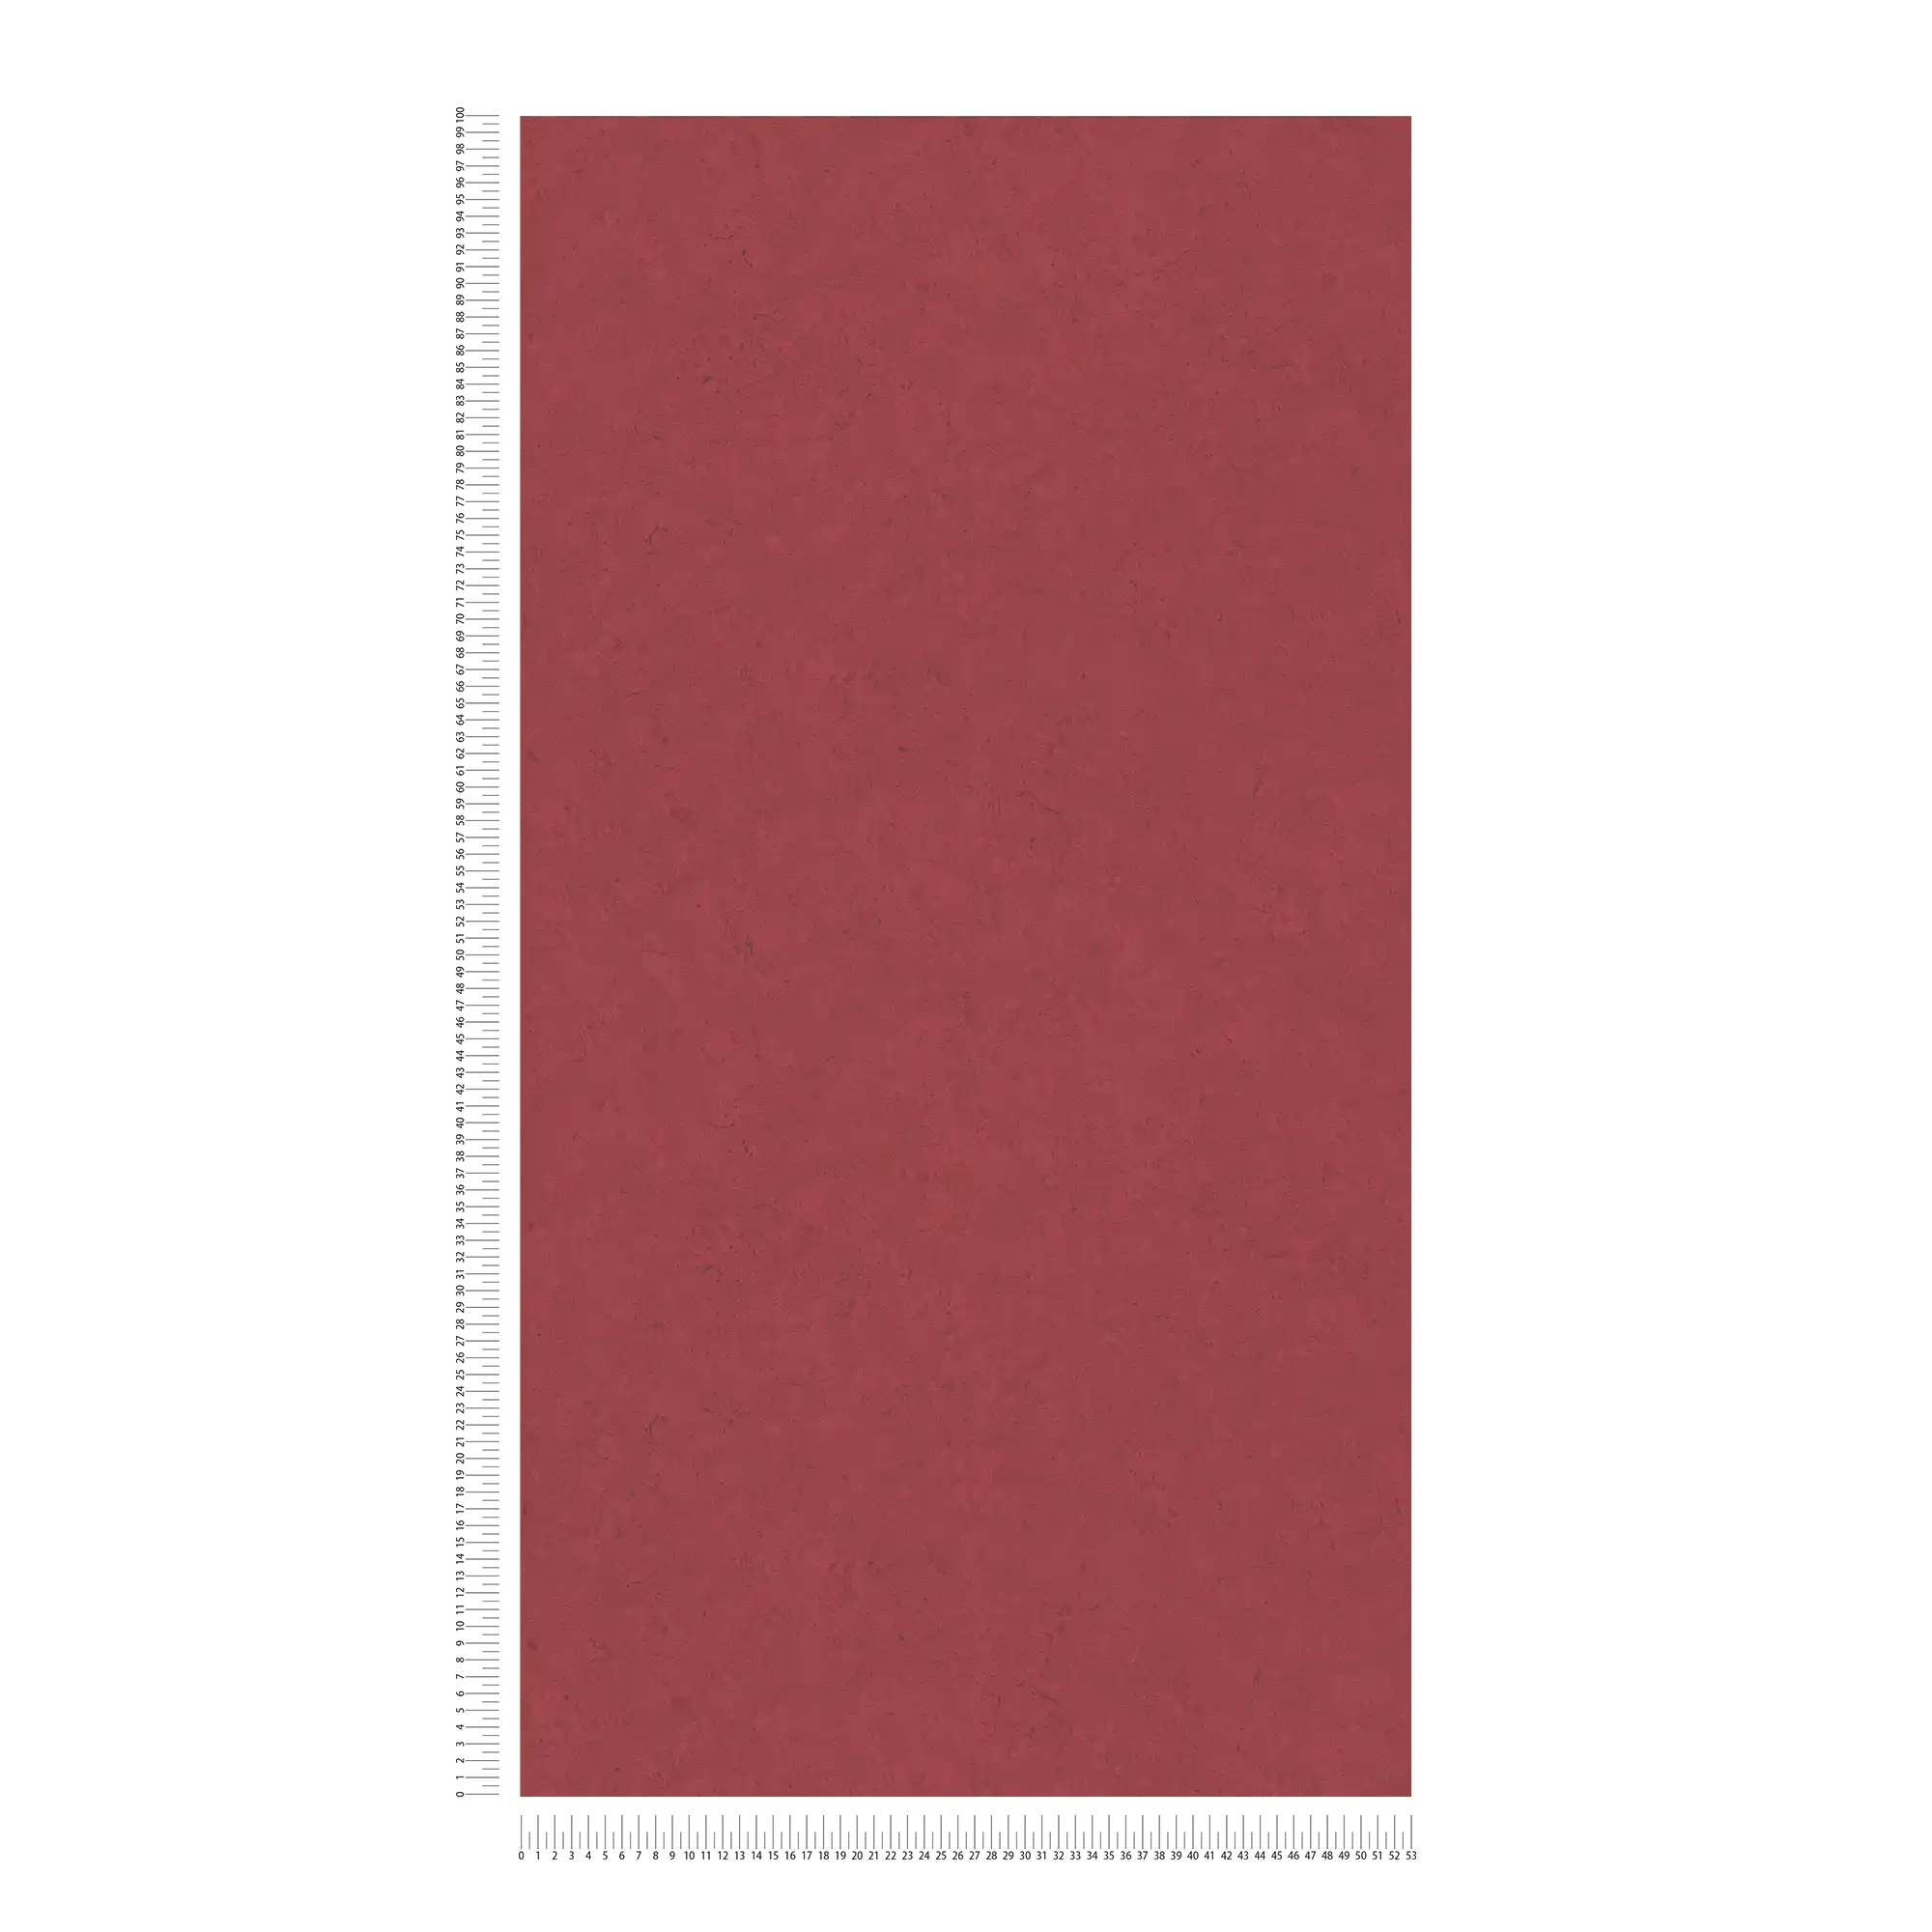             Papel pintado no tejido rojo para chimeneas con aspecto de hormigón - rojo
        